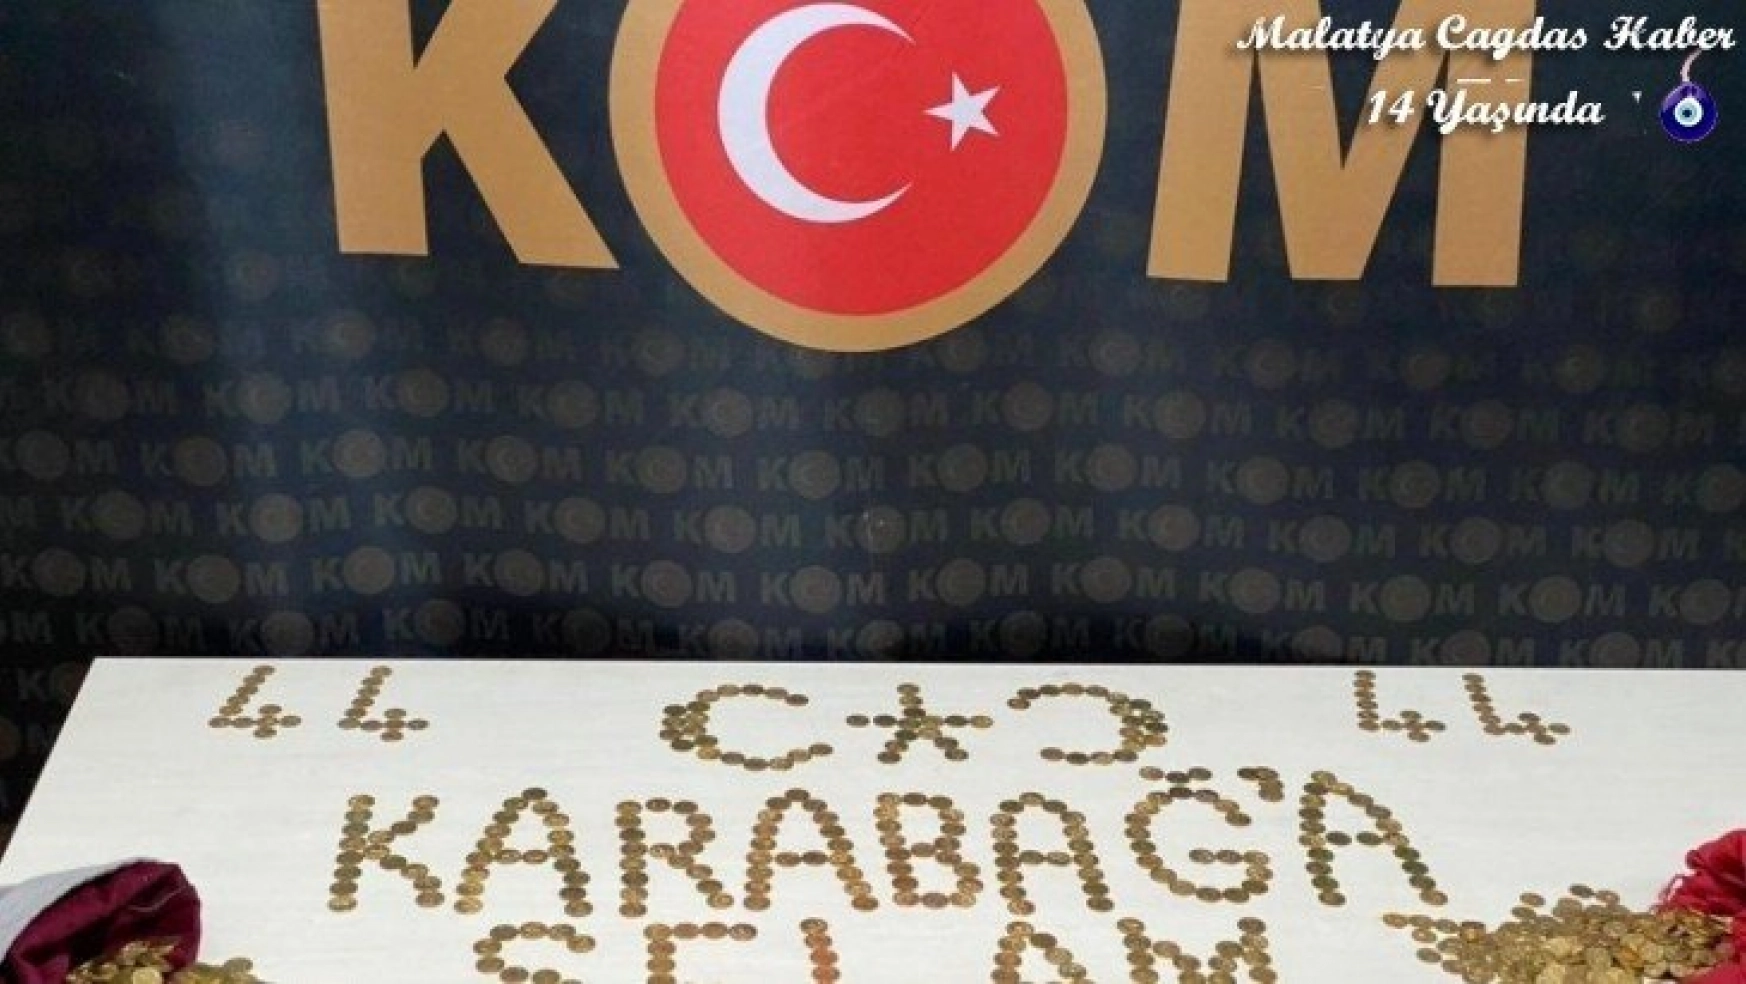 Azerbaycan'a altın sikkeli destek mesajı